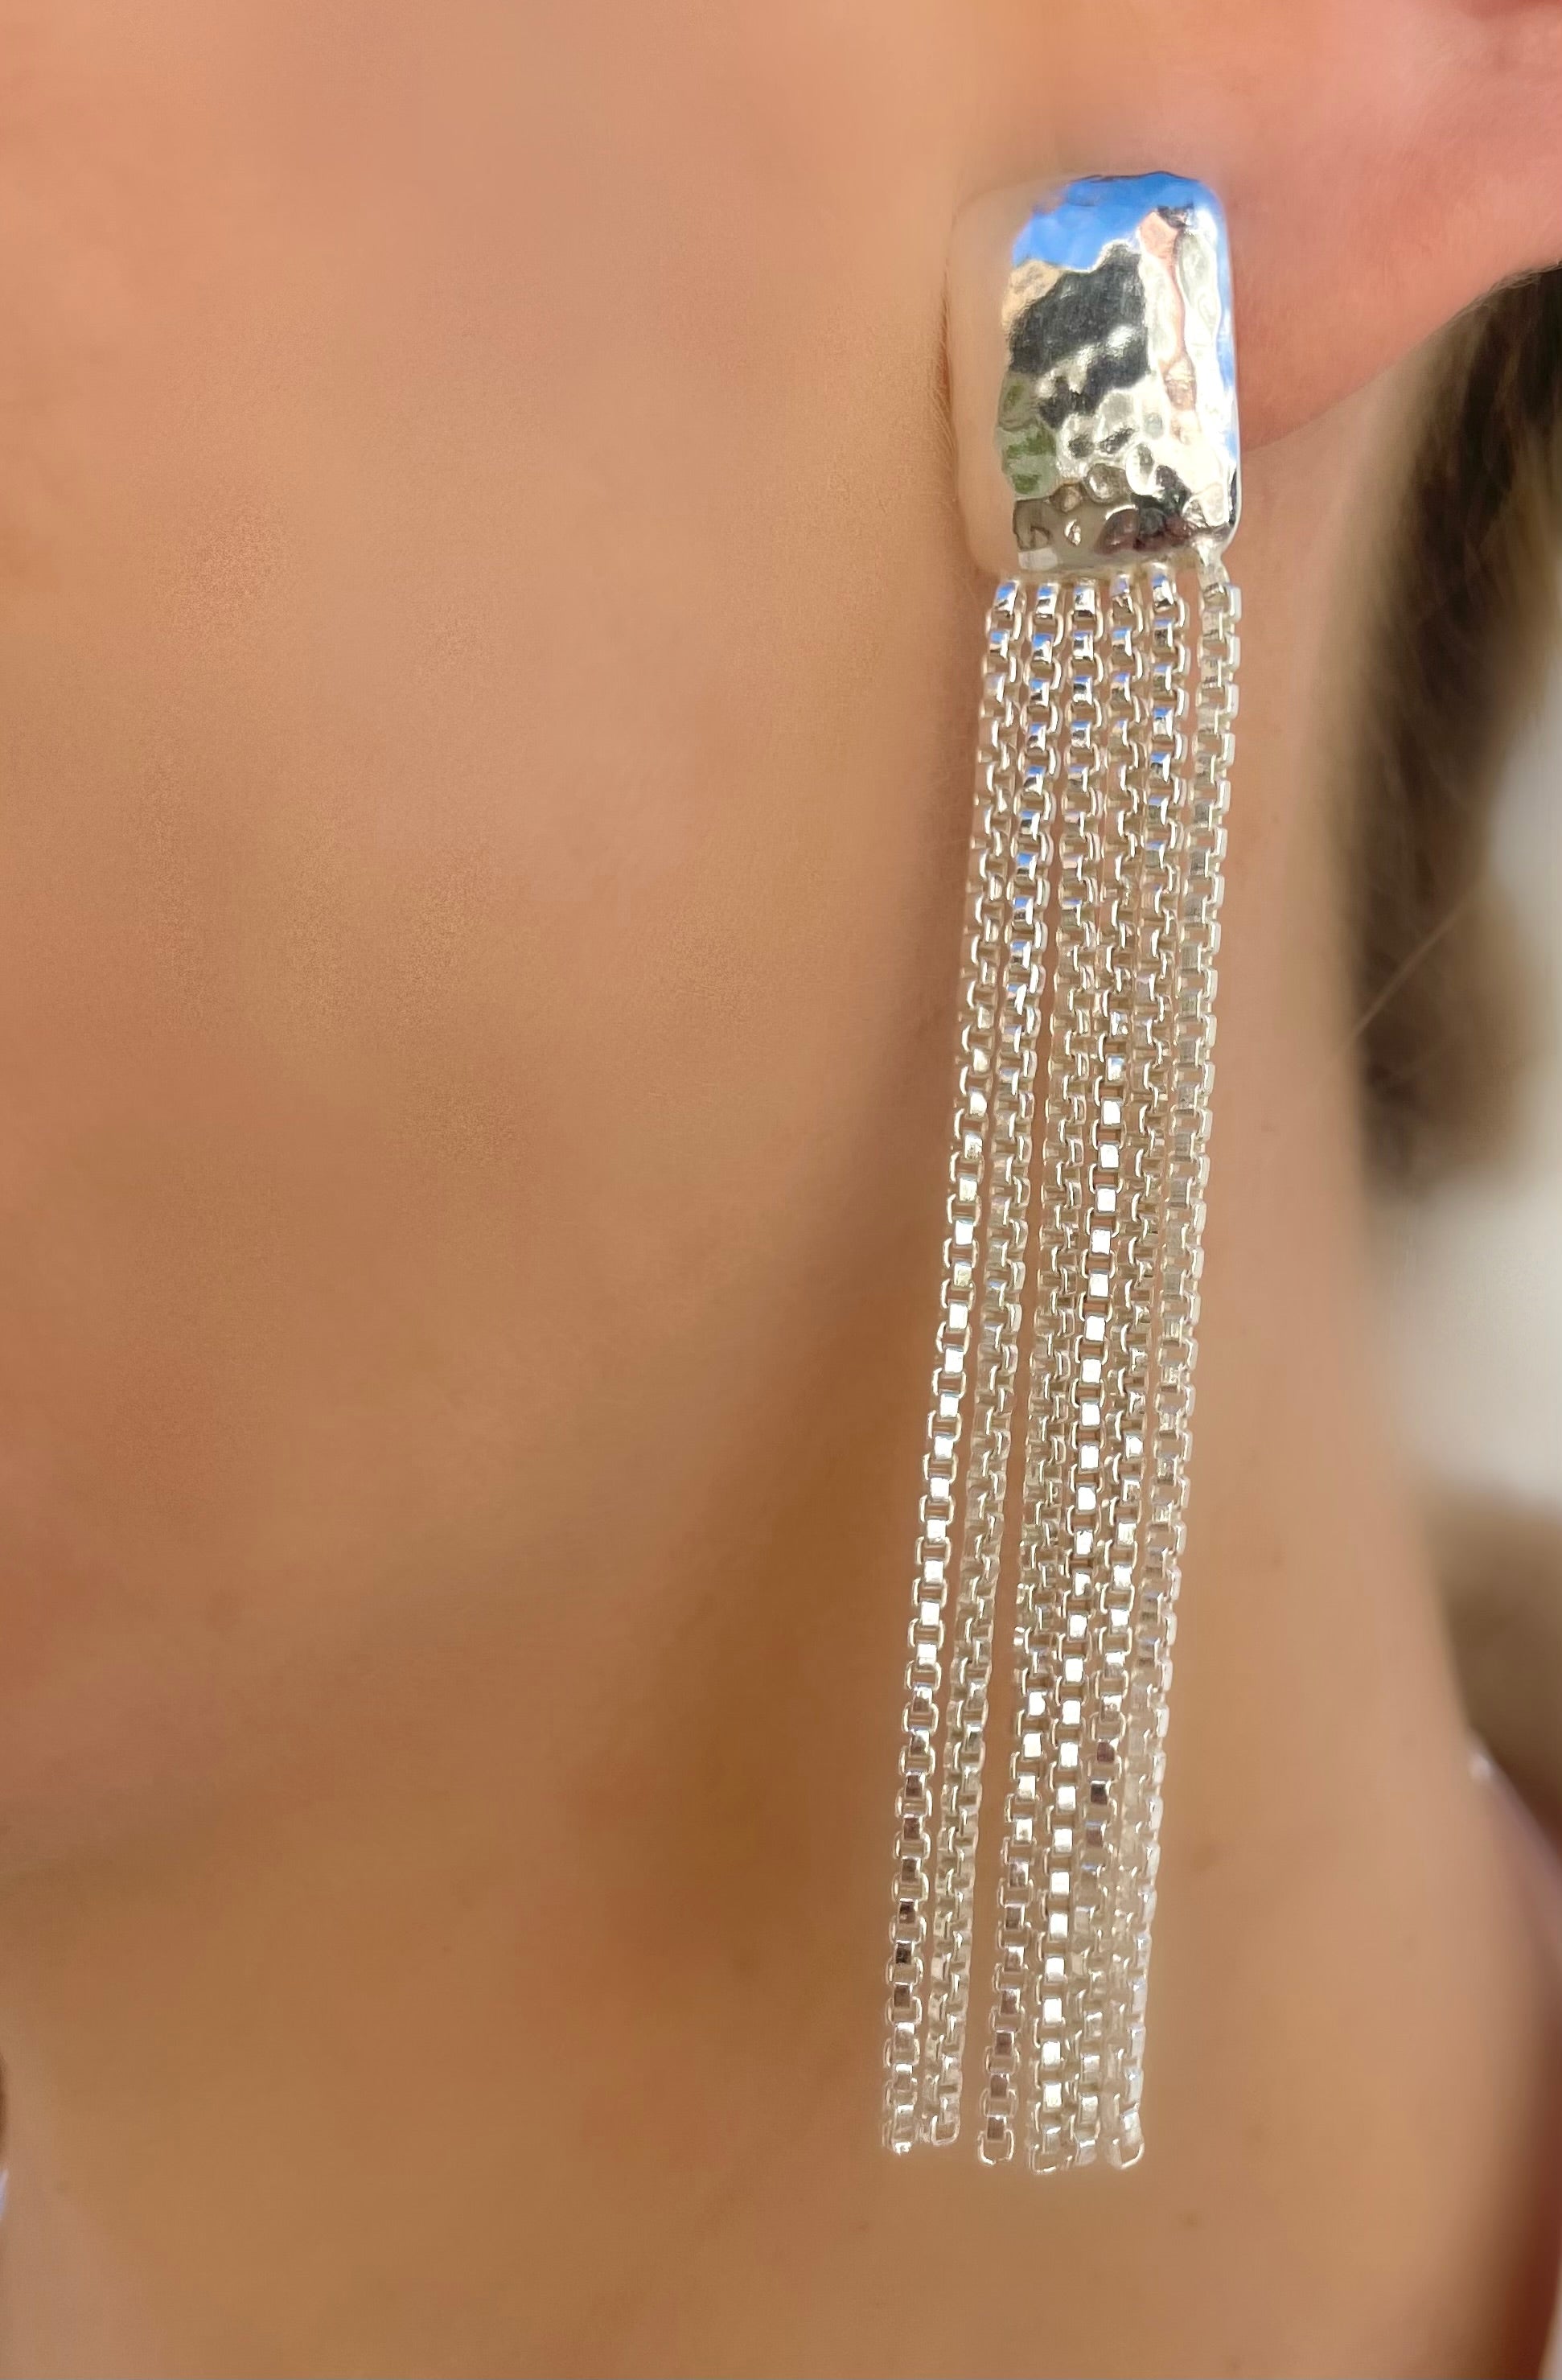 Le Marshand®  -  Joyería en plata 925, chapado en Oro 24K - Collar Artist (Plata) - Diseños propios - Brazaletes, pulseras, collares y pendientes - Joyería online - Mallorca